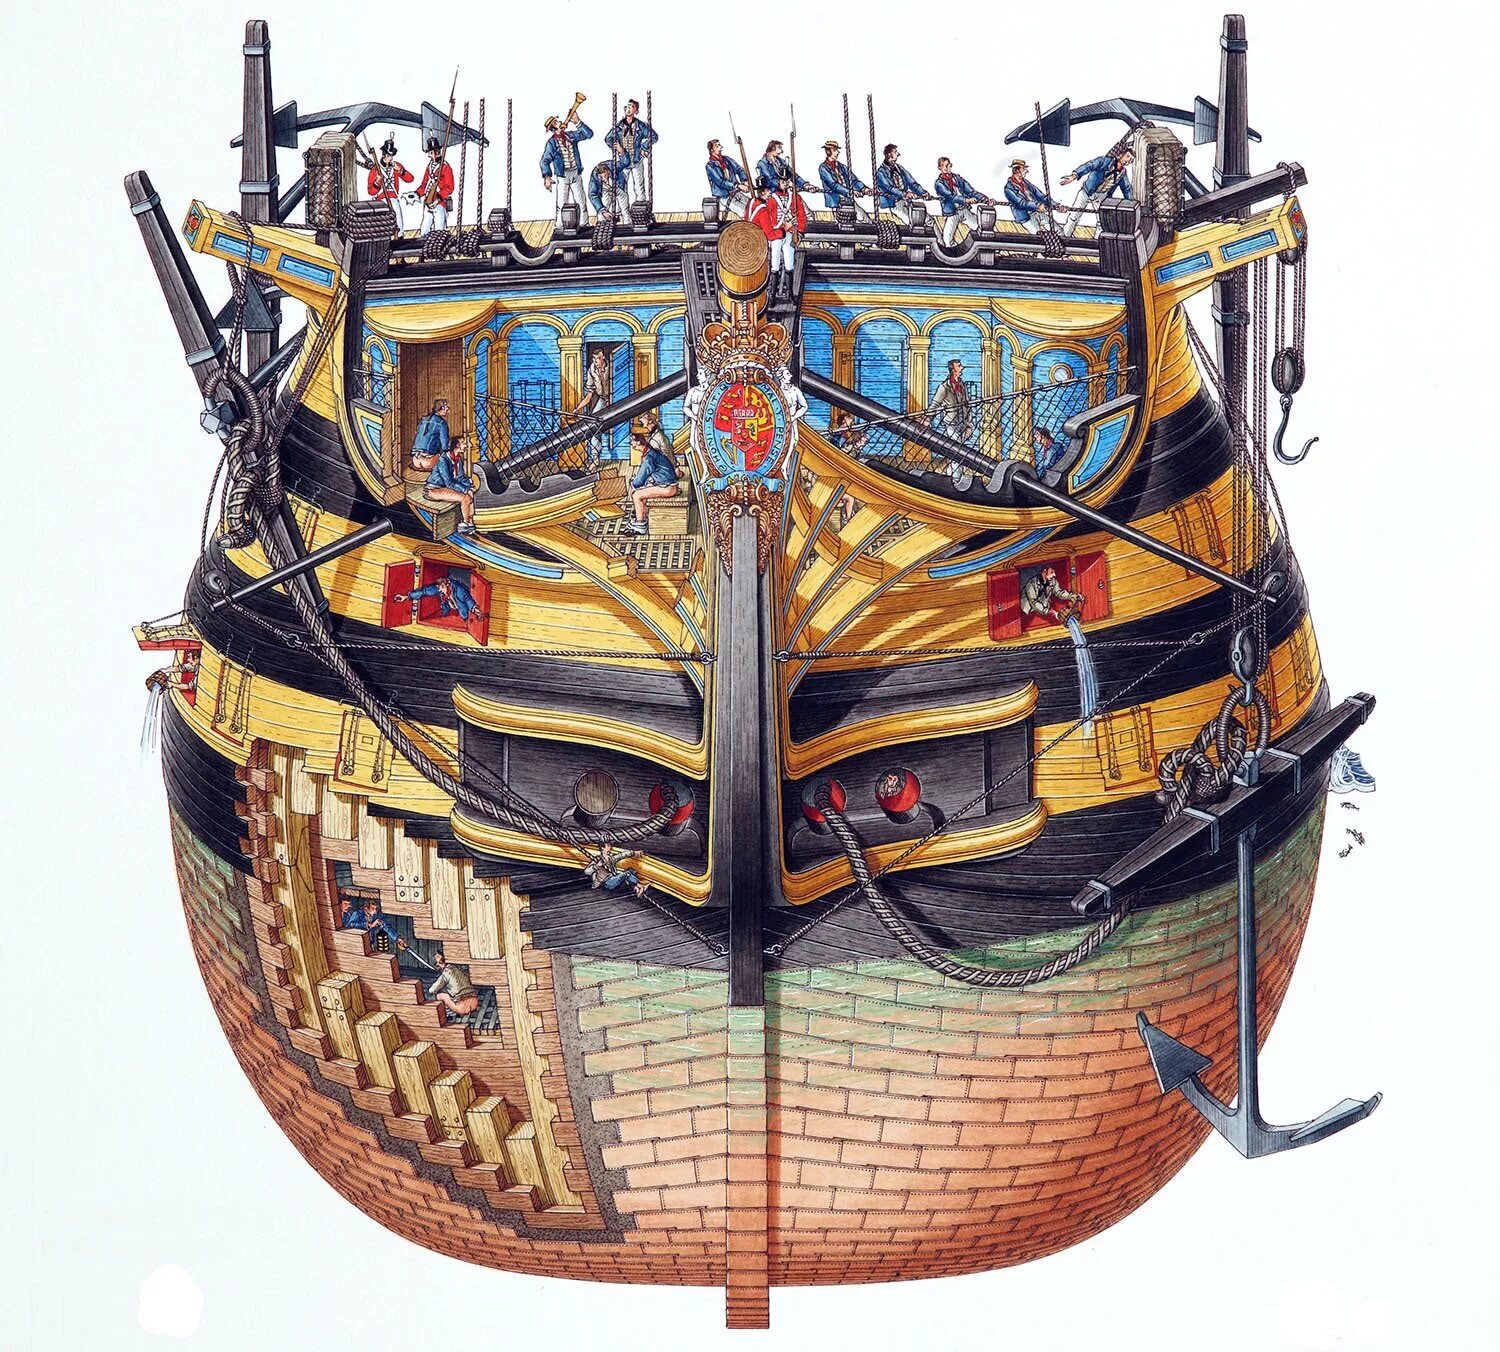 Название частей корабля. Галеон строение корабля. Строение парусного корабля 17 века. Бисти, Плэтт: чудесные сечения.